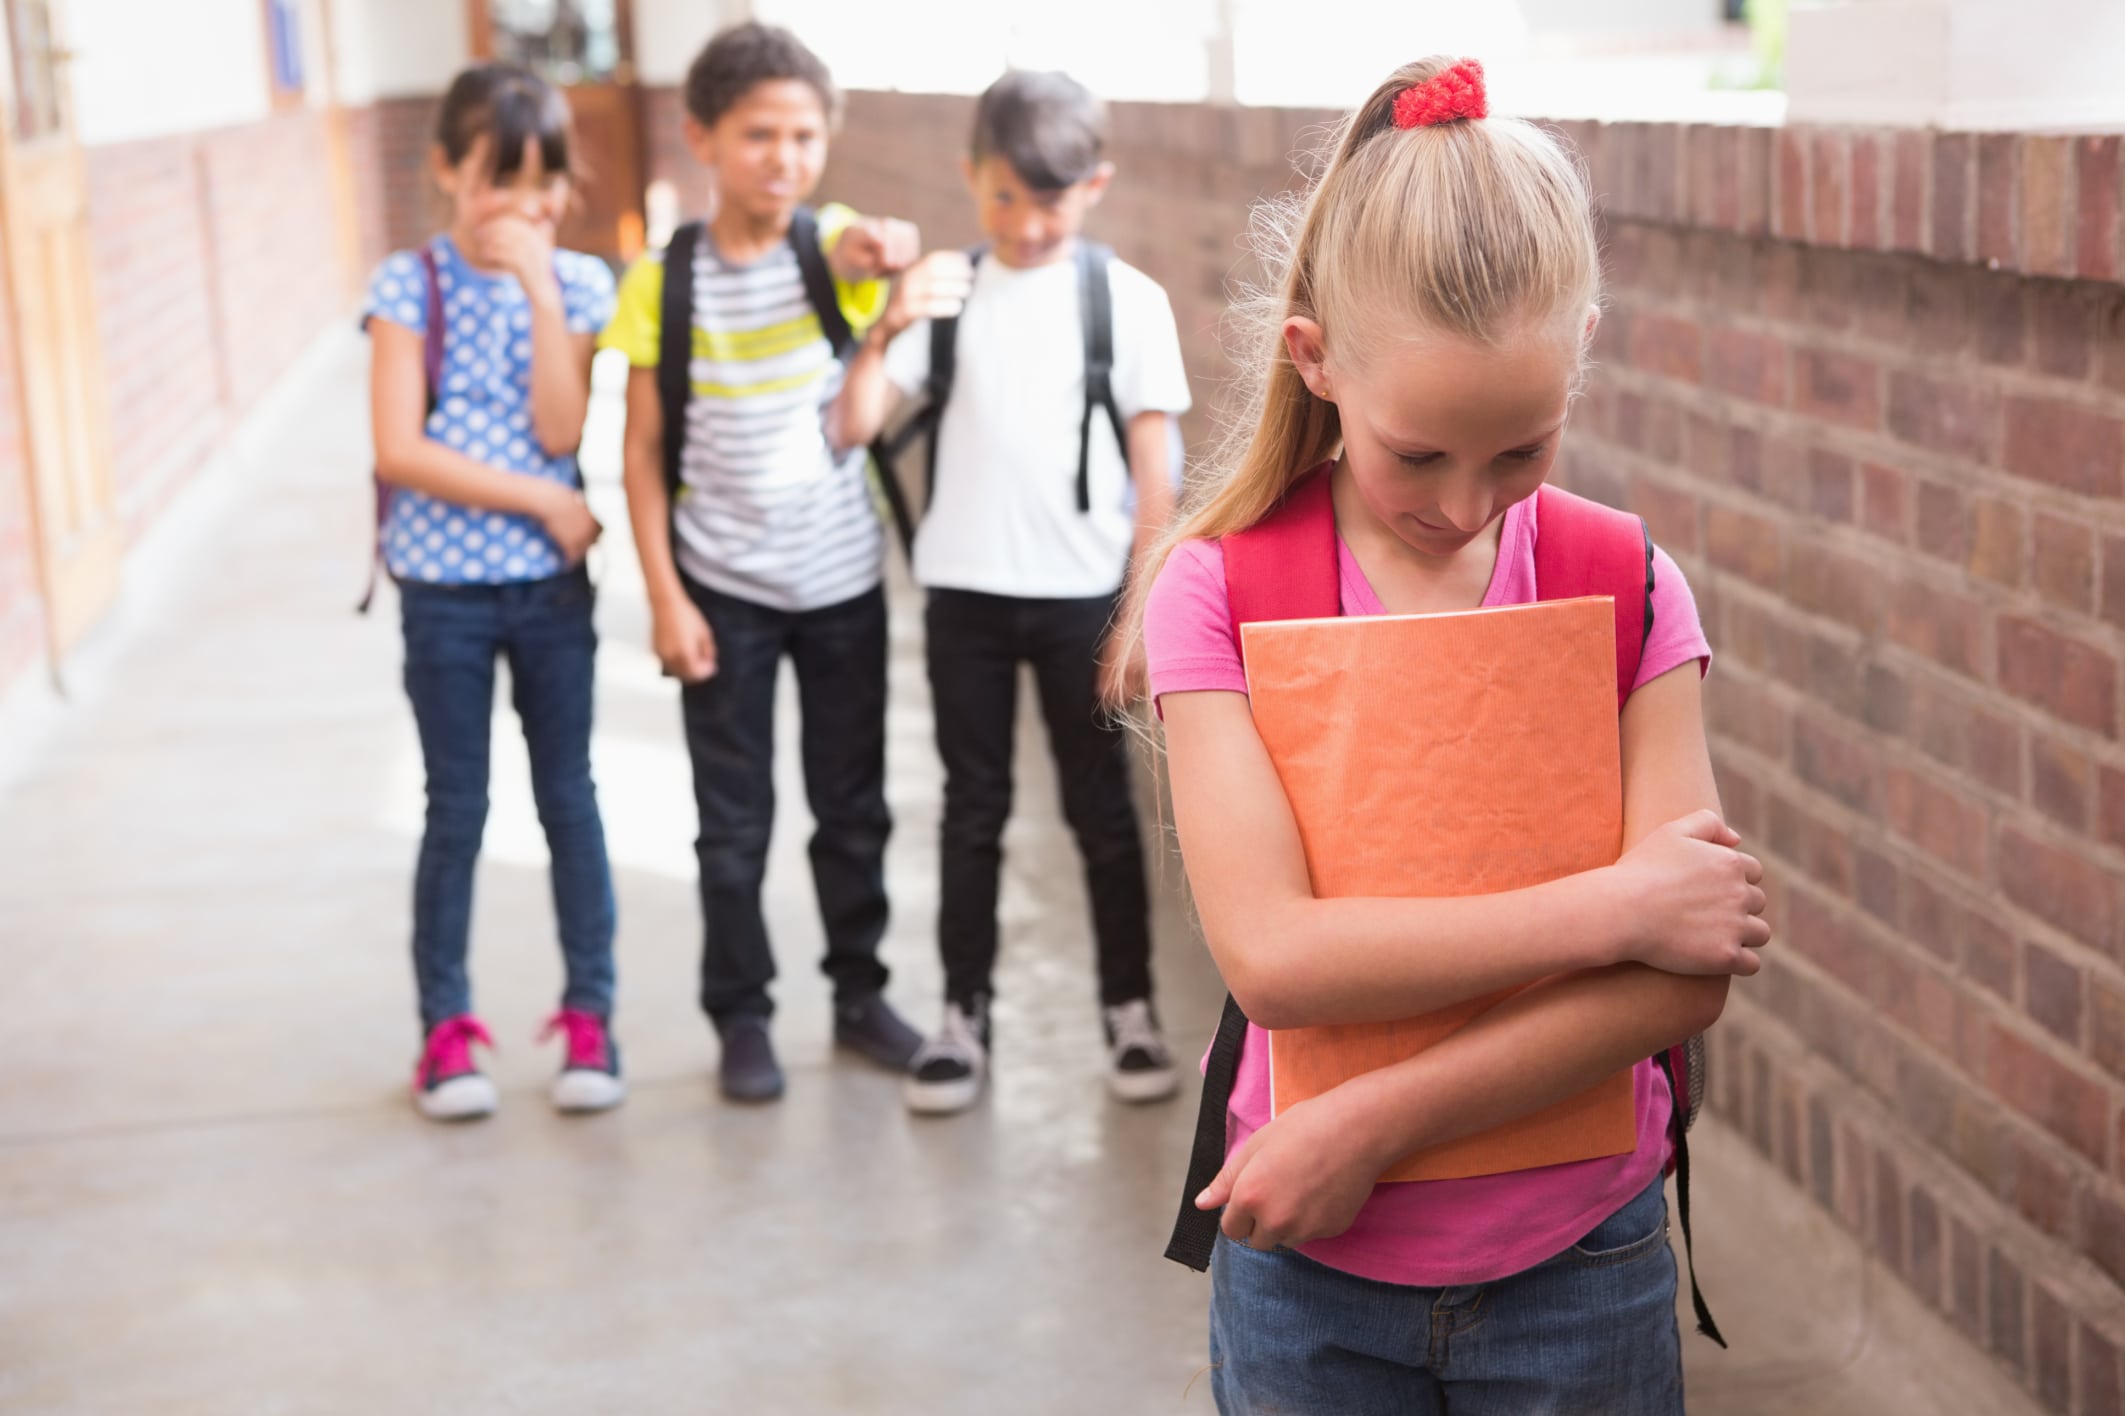 Pare o bullying na escola. valentão adolescente agressivo, agressão verbal  do aluno e ilustração de tipos de violência ou bullying de adolescentes